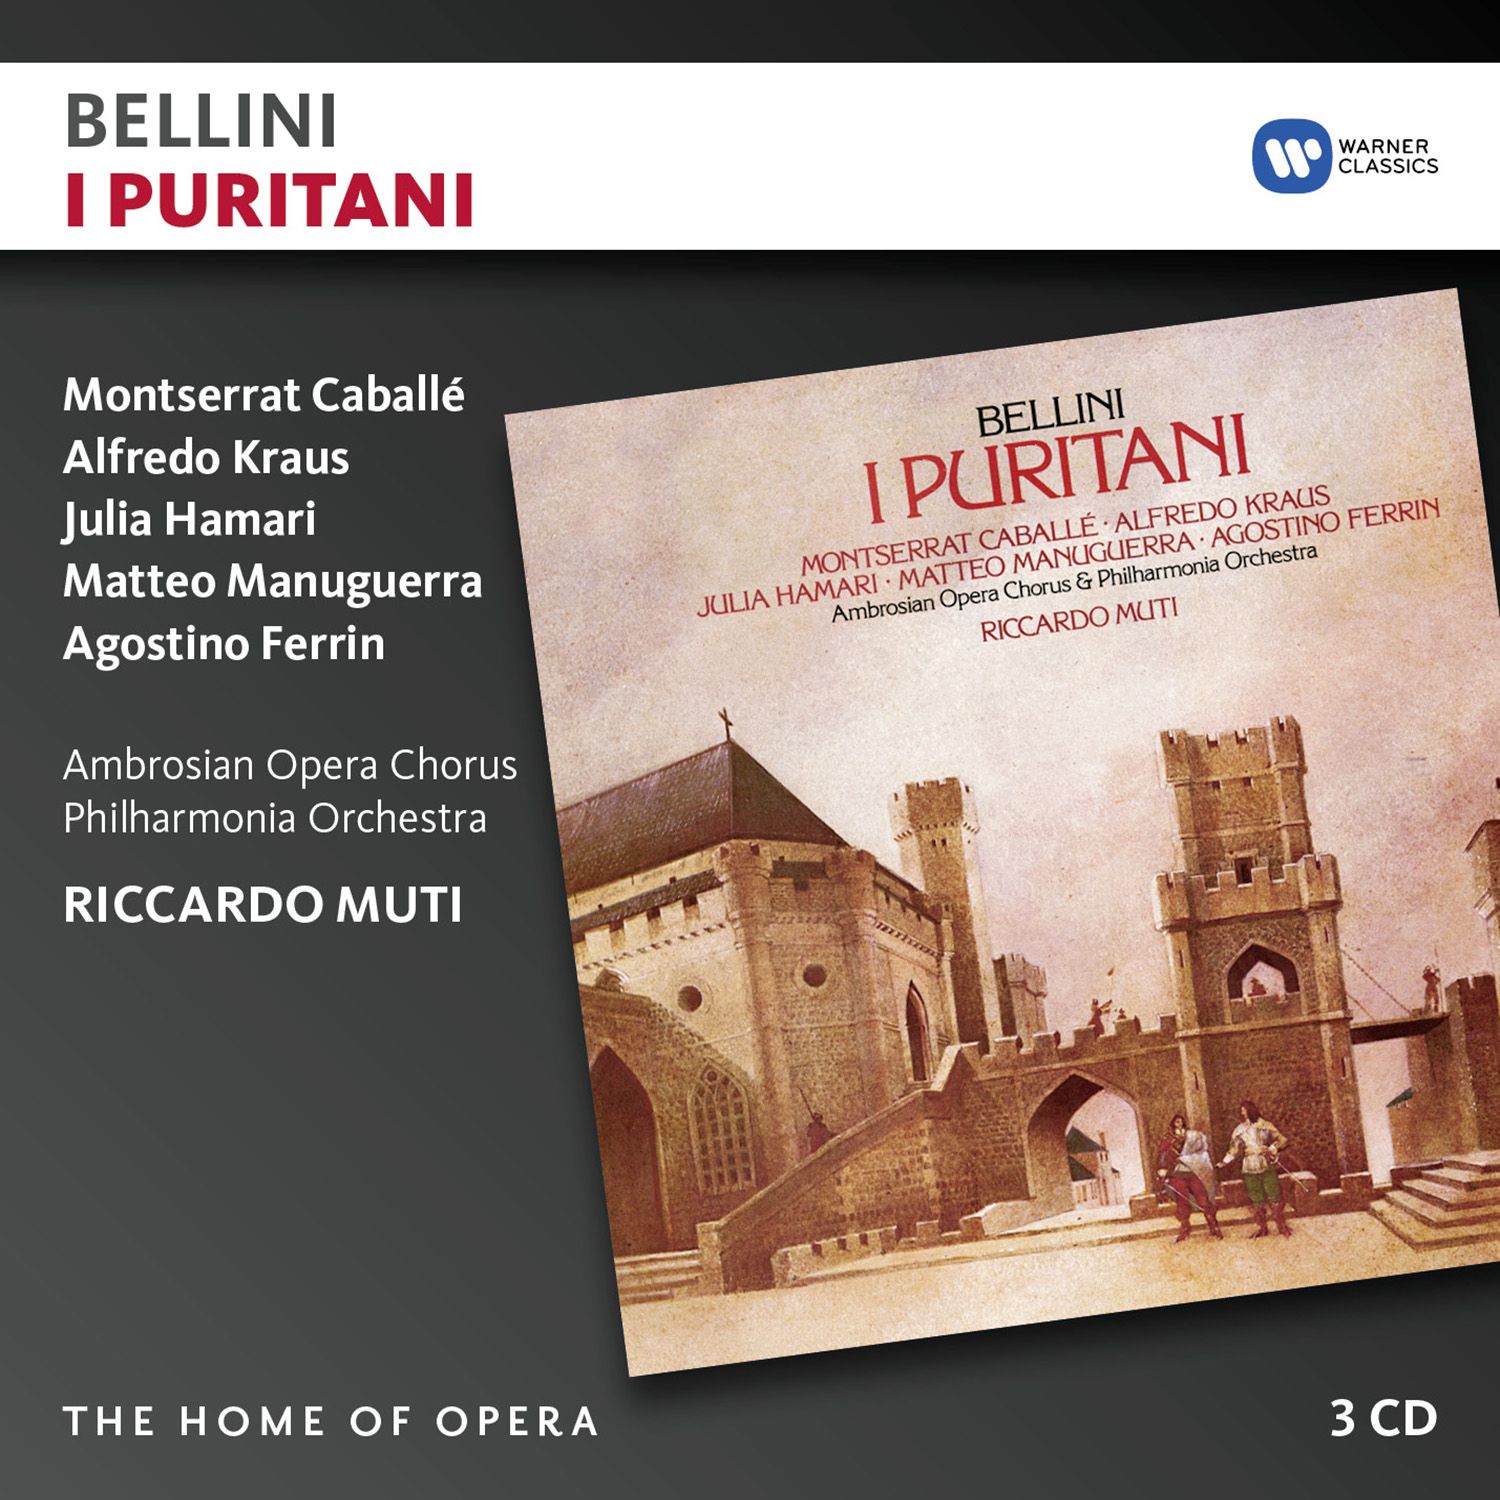 I Puritani (1988 Remastered Version), Act I, Scena terza: Ad Arturo onore (Coro)